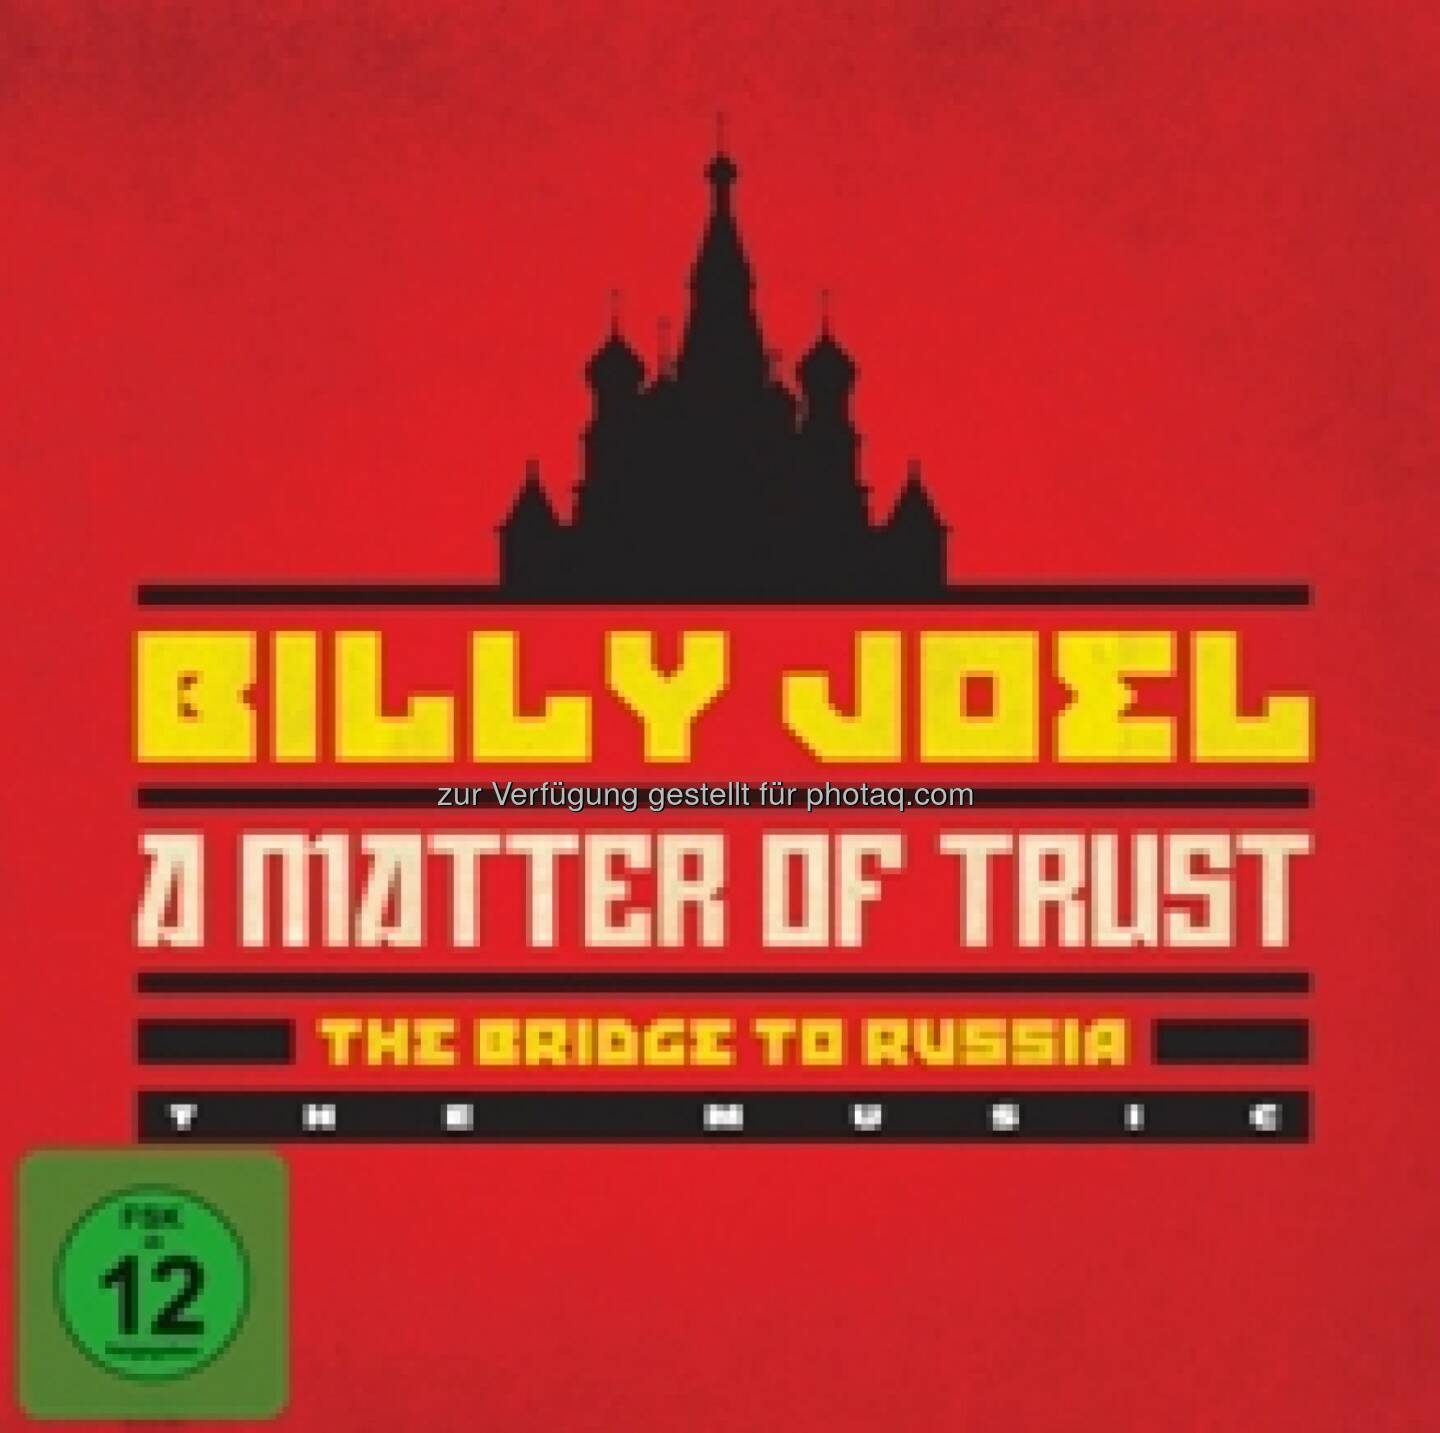 Billy Joel: A Matter of Trust – The Bridge to Russia. Am 16. Mai 2014 erscheint Billy Joels A MATTER OF TRUST - THE BRIDGE TO RUSSIA, die historische 1987er Tour des Künstlers in Russland, neu überarbeitet als Deluxe Edition auf 2CD/Blu-ray Box-Set. Die Deluxe Edition enthält einen Konzertfilm in voller Länge (The Concert) auf Blu-ray, ein Doppelalbum inklusive zwölf bisher unveröffentlichten Tracks und Bonusmaterial auf CD (The Music) und einen exklusiven SHOWTIME® Dokumentarfilm, der über Billys 1987er Sowjet-Tour berichtet. Regisseur des Films ist der vierfache Emmy-Preisträger Jim Brown (Pete Seeger: The Power of Song, American Roots Music, An Evening with Henry Belafonte). Zusätzlich beinhaltet die Deluxe Edition ein Buch mit seltenen Fotos und neuen Liner Notes sowie Augenzeugenberichten von Autoren und Journalisten wie Gary Graff, Michael Jensen, Neal Preston, Rona Elliot und Wayne Robins. Billy Joels historischer Russlandbesuch wurde zum weltweiten Nachrichten-Event und brachte Journalisten und Autoren dazu, die ganze Tour zu verfolgen, um den Fortschritt und die Wirkung zu dokumentieren, die Billy, seine Band und seine Familie auf das russische Volk hatten. Die komplette Tour wurde professionell gefilmt und die Konzerte weltweit simultan im Radio übertragen.
